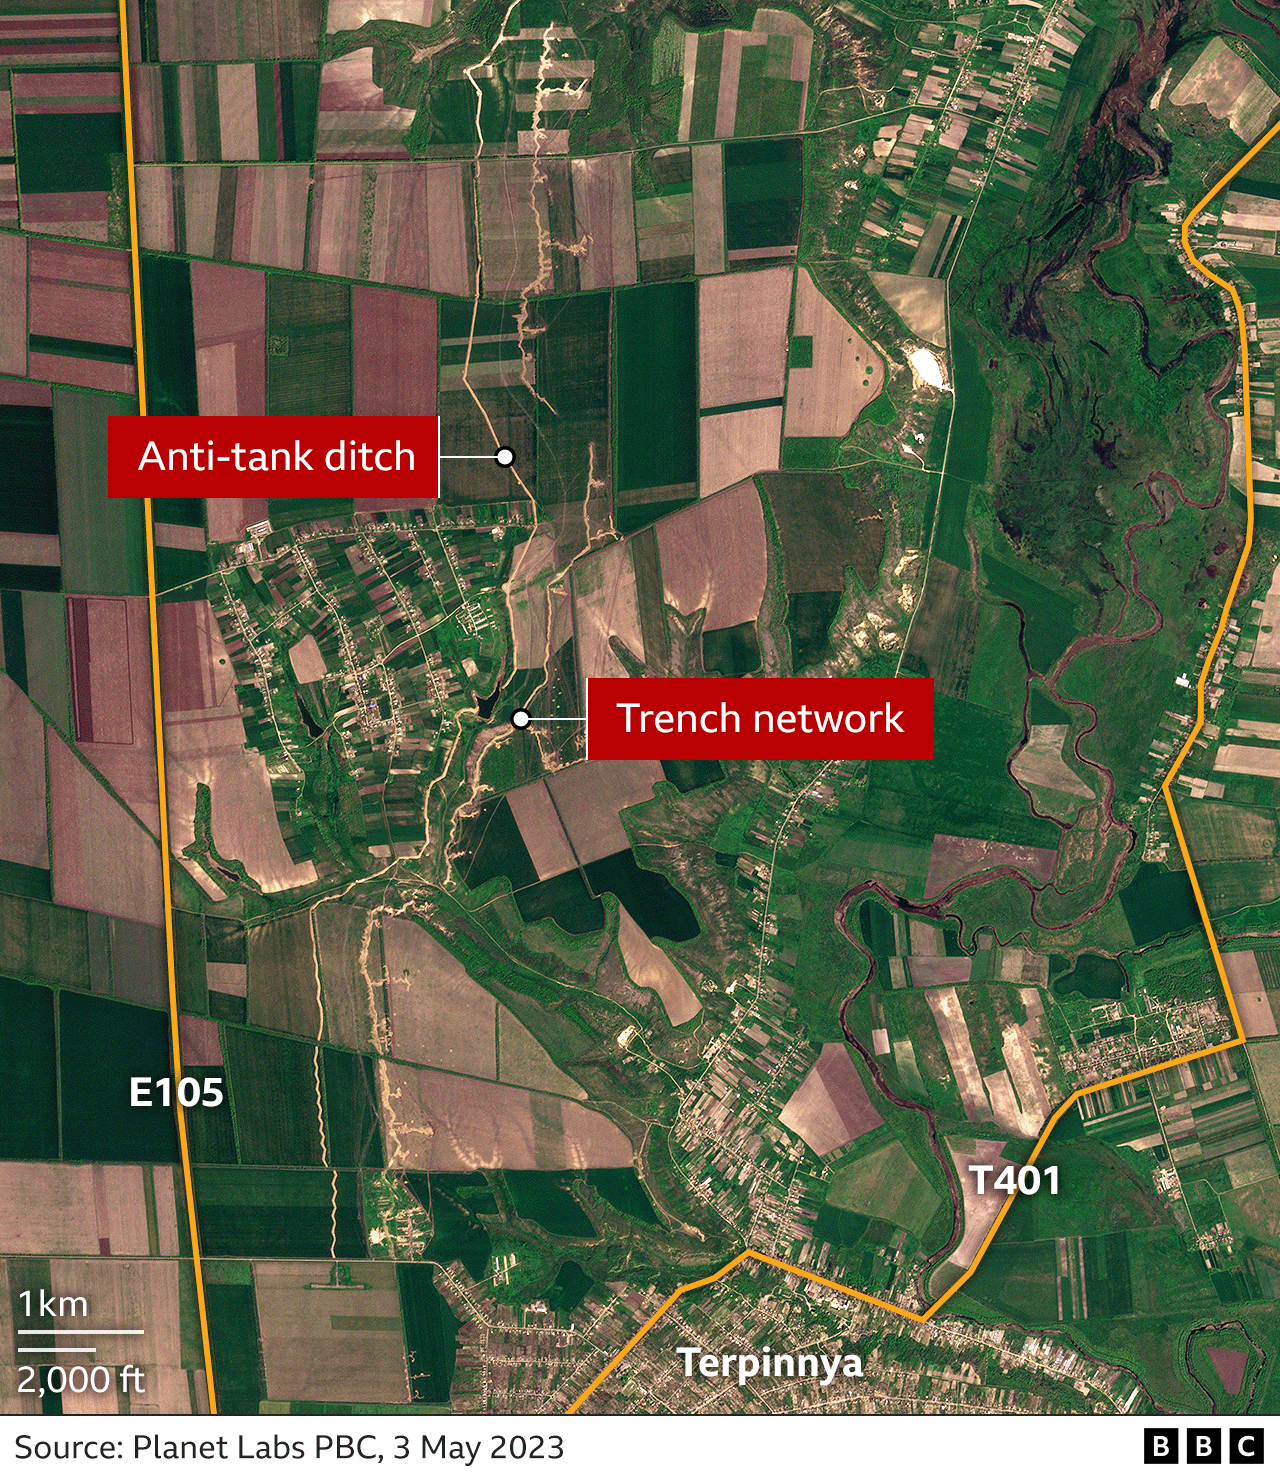 Δορυφορική εικόνα που δείχνει τον αυτοκινητόδρομο E105, με επικαλύψεις που δείχνουν αντιαρματικές τάφρους και ένα δίκτυο χαρακωμάτων